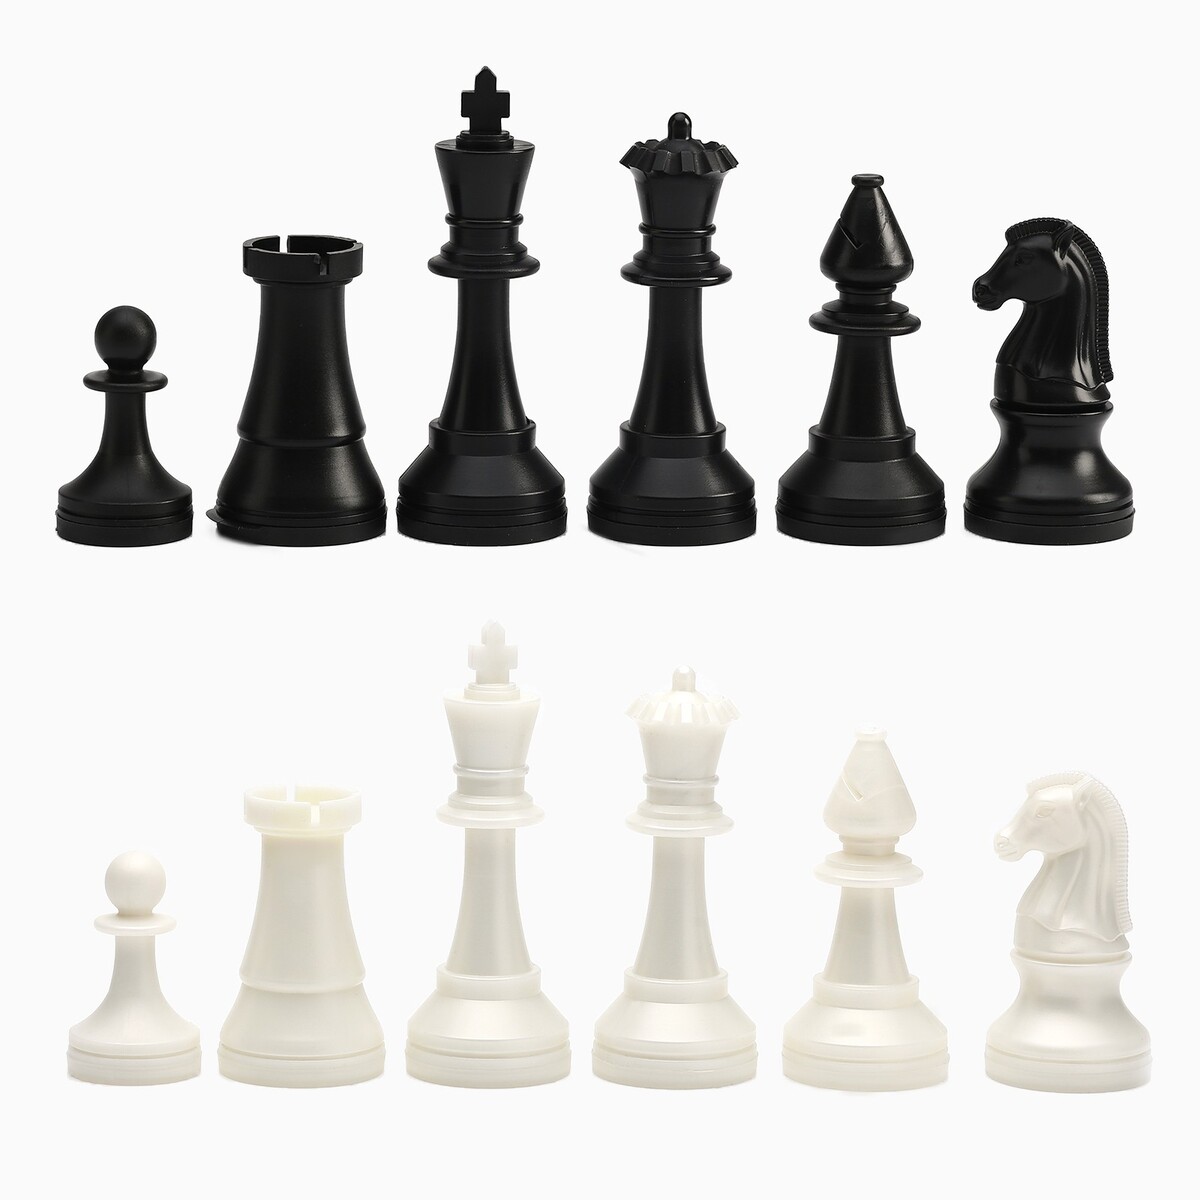 Шахматные фигуры турнирные, пластик, король h-10.5 см, пешка h-5 см шахматные фигуры пластик король h 7 5 см пешка h 3 5 см